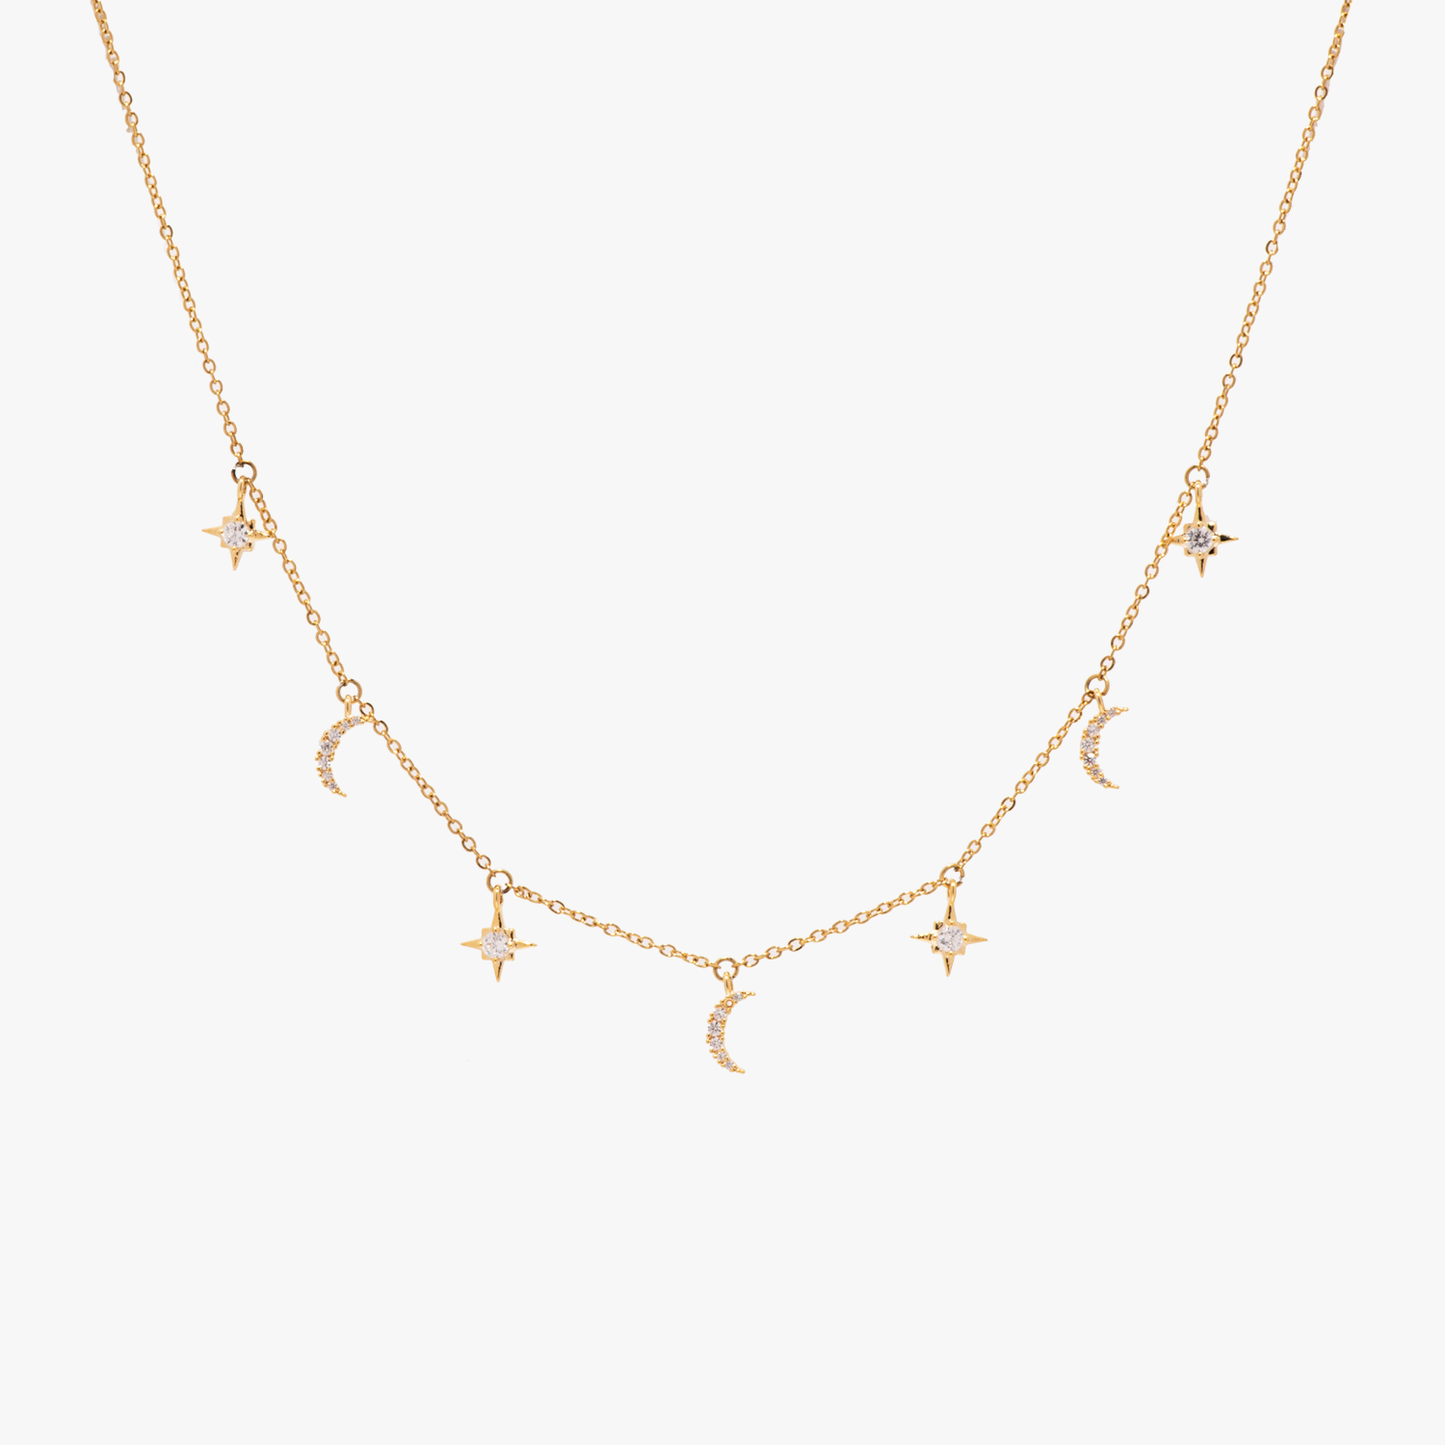 Produktfoto Collier "Moons & Stars" - Halskette im Shop von COPARIE.